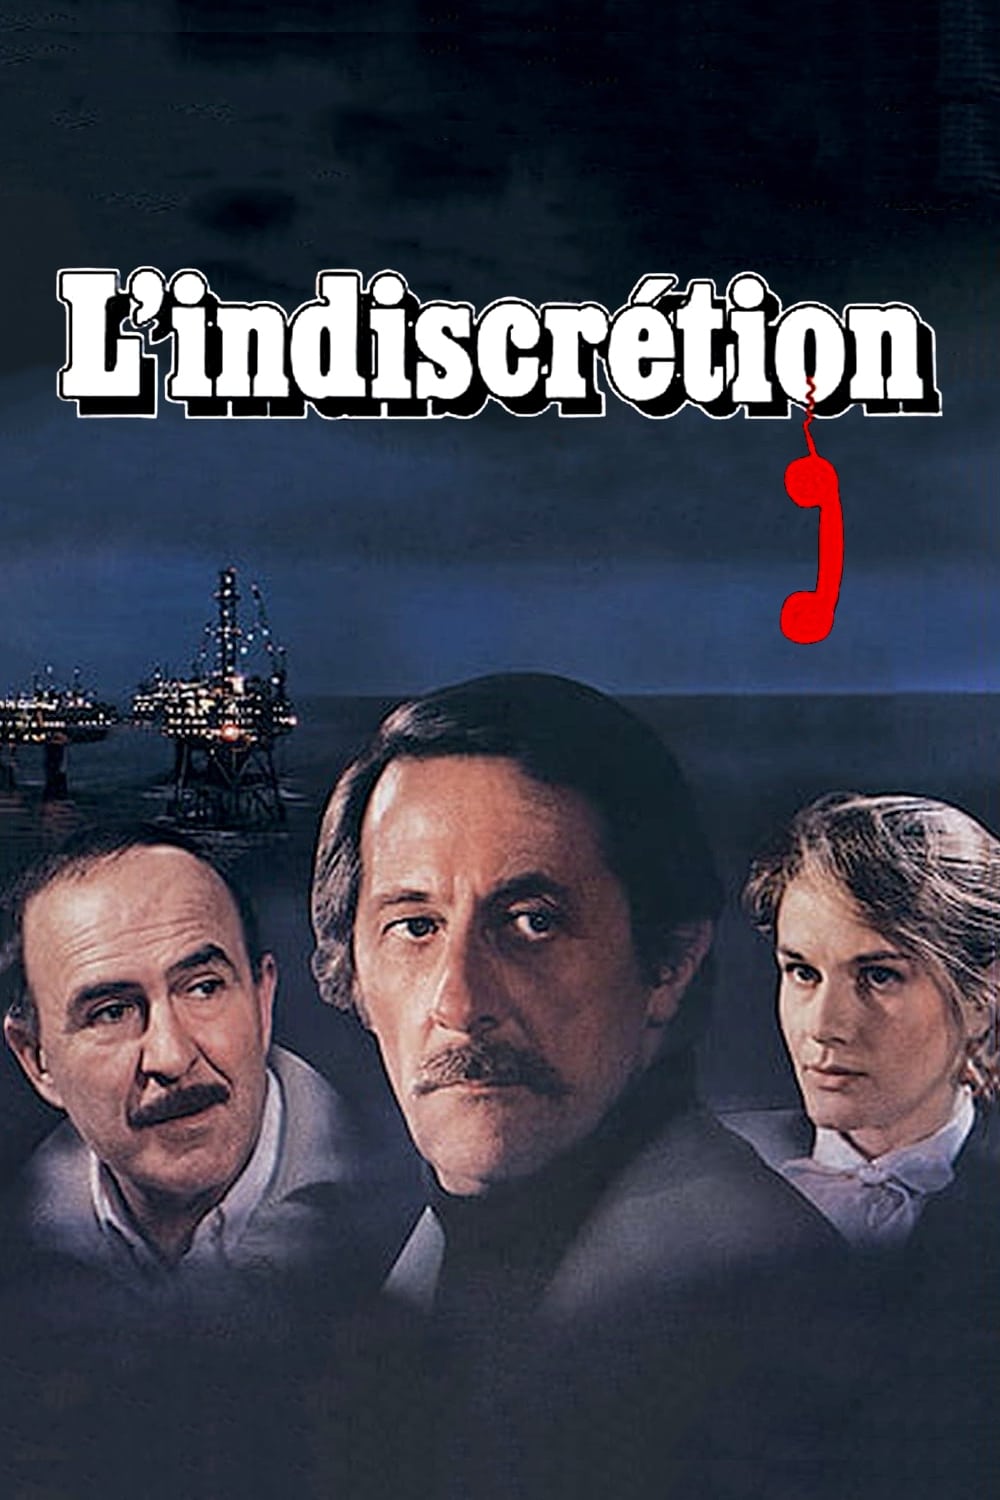 L'indiscrétion (1982)